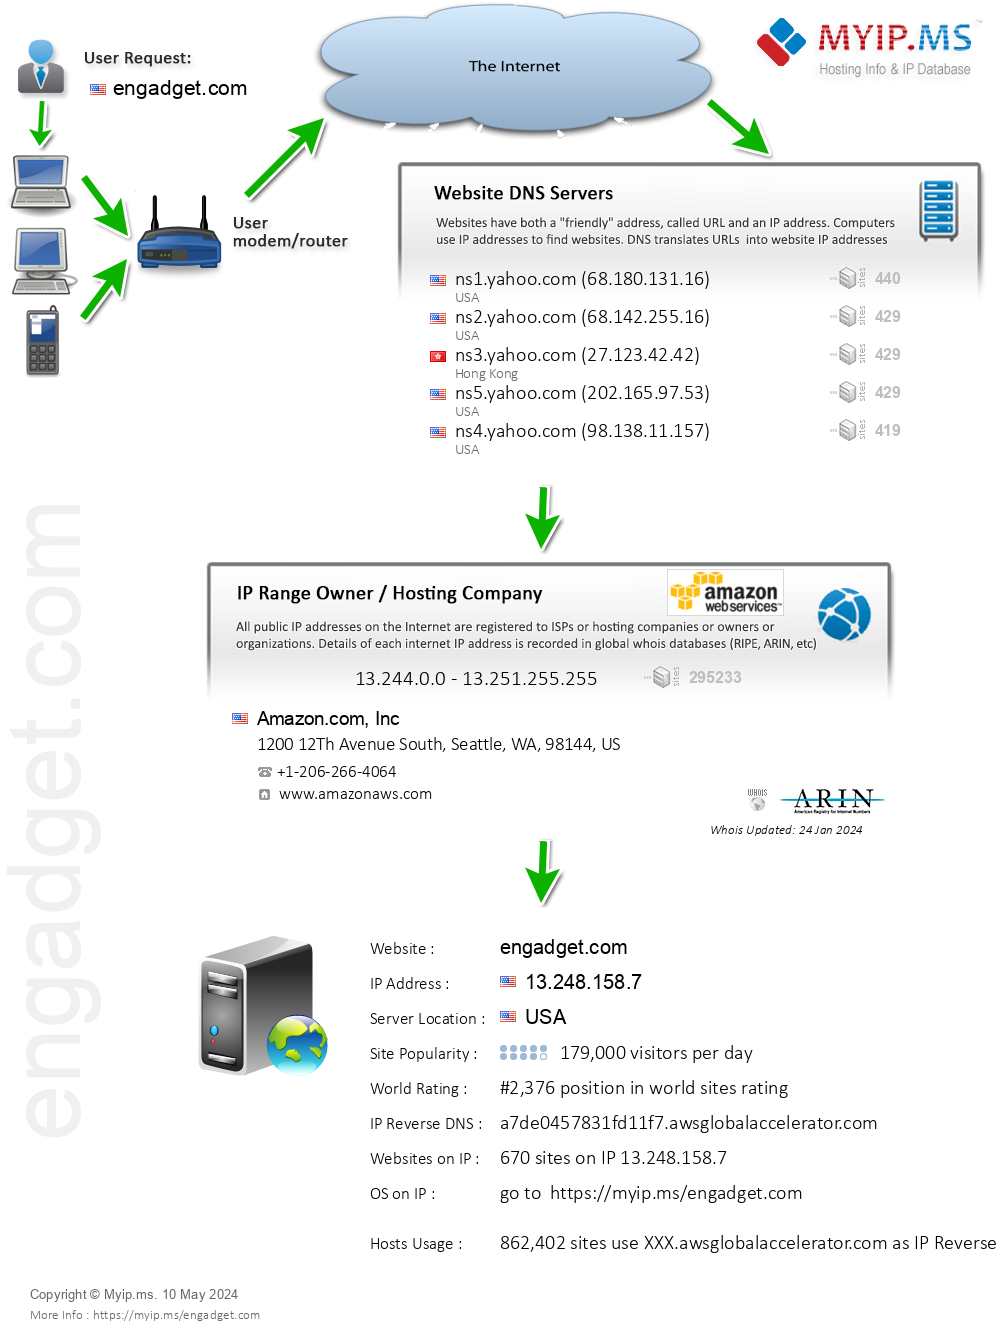 Engadget.com - Website Hosting Visual IP Diagram